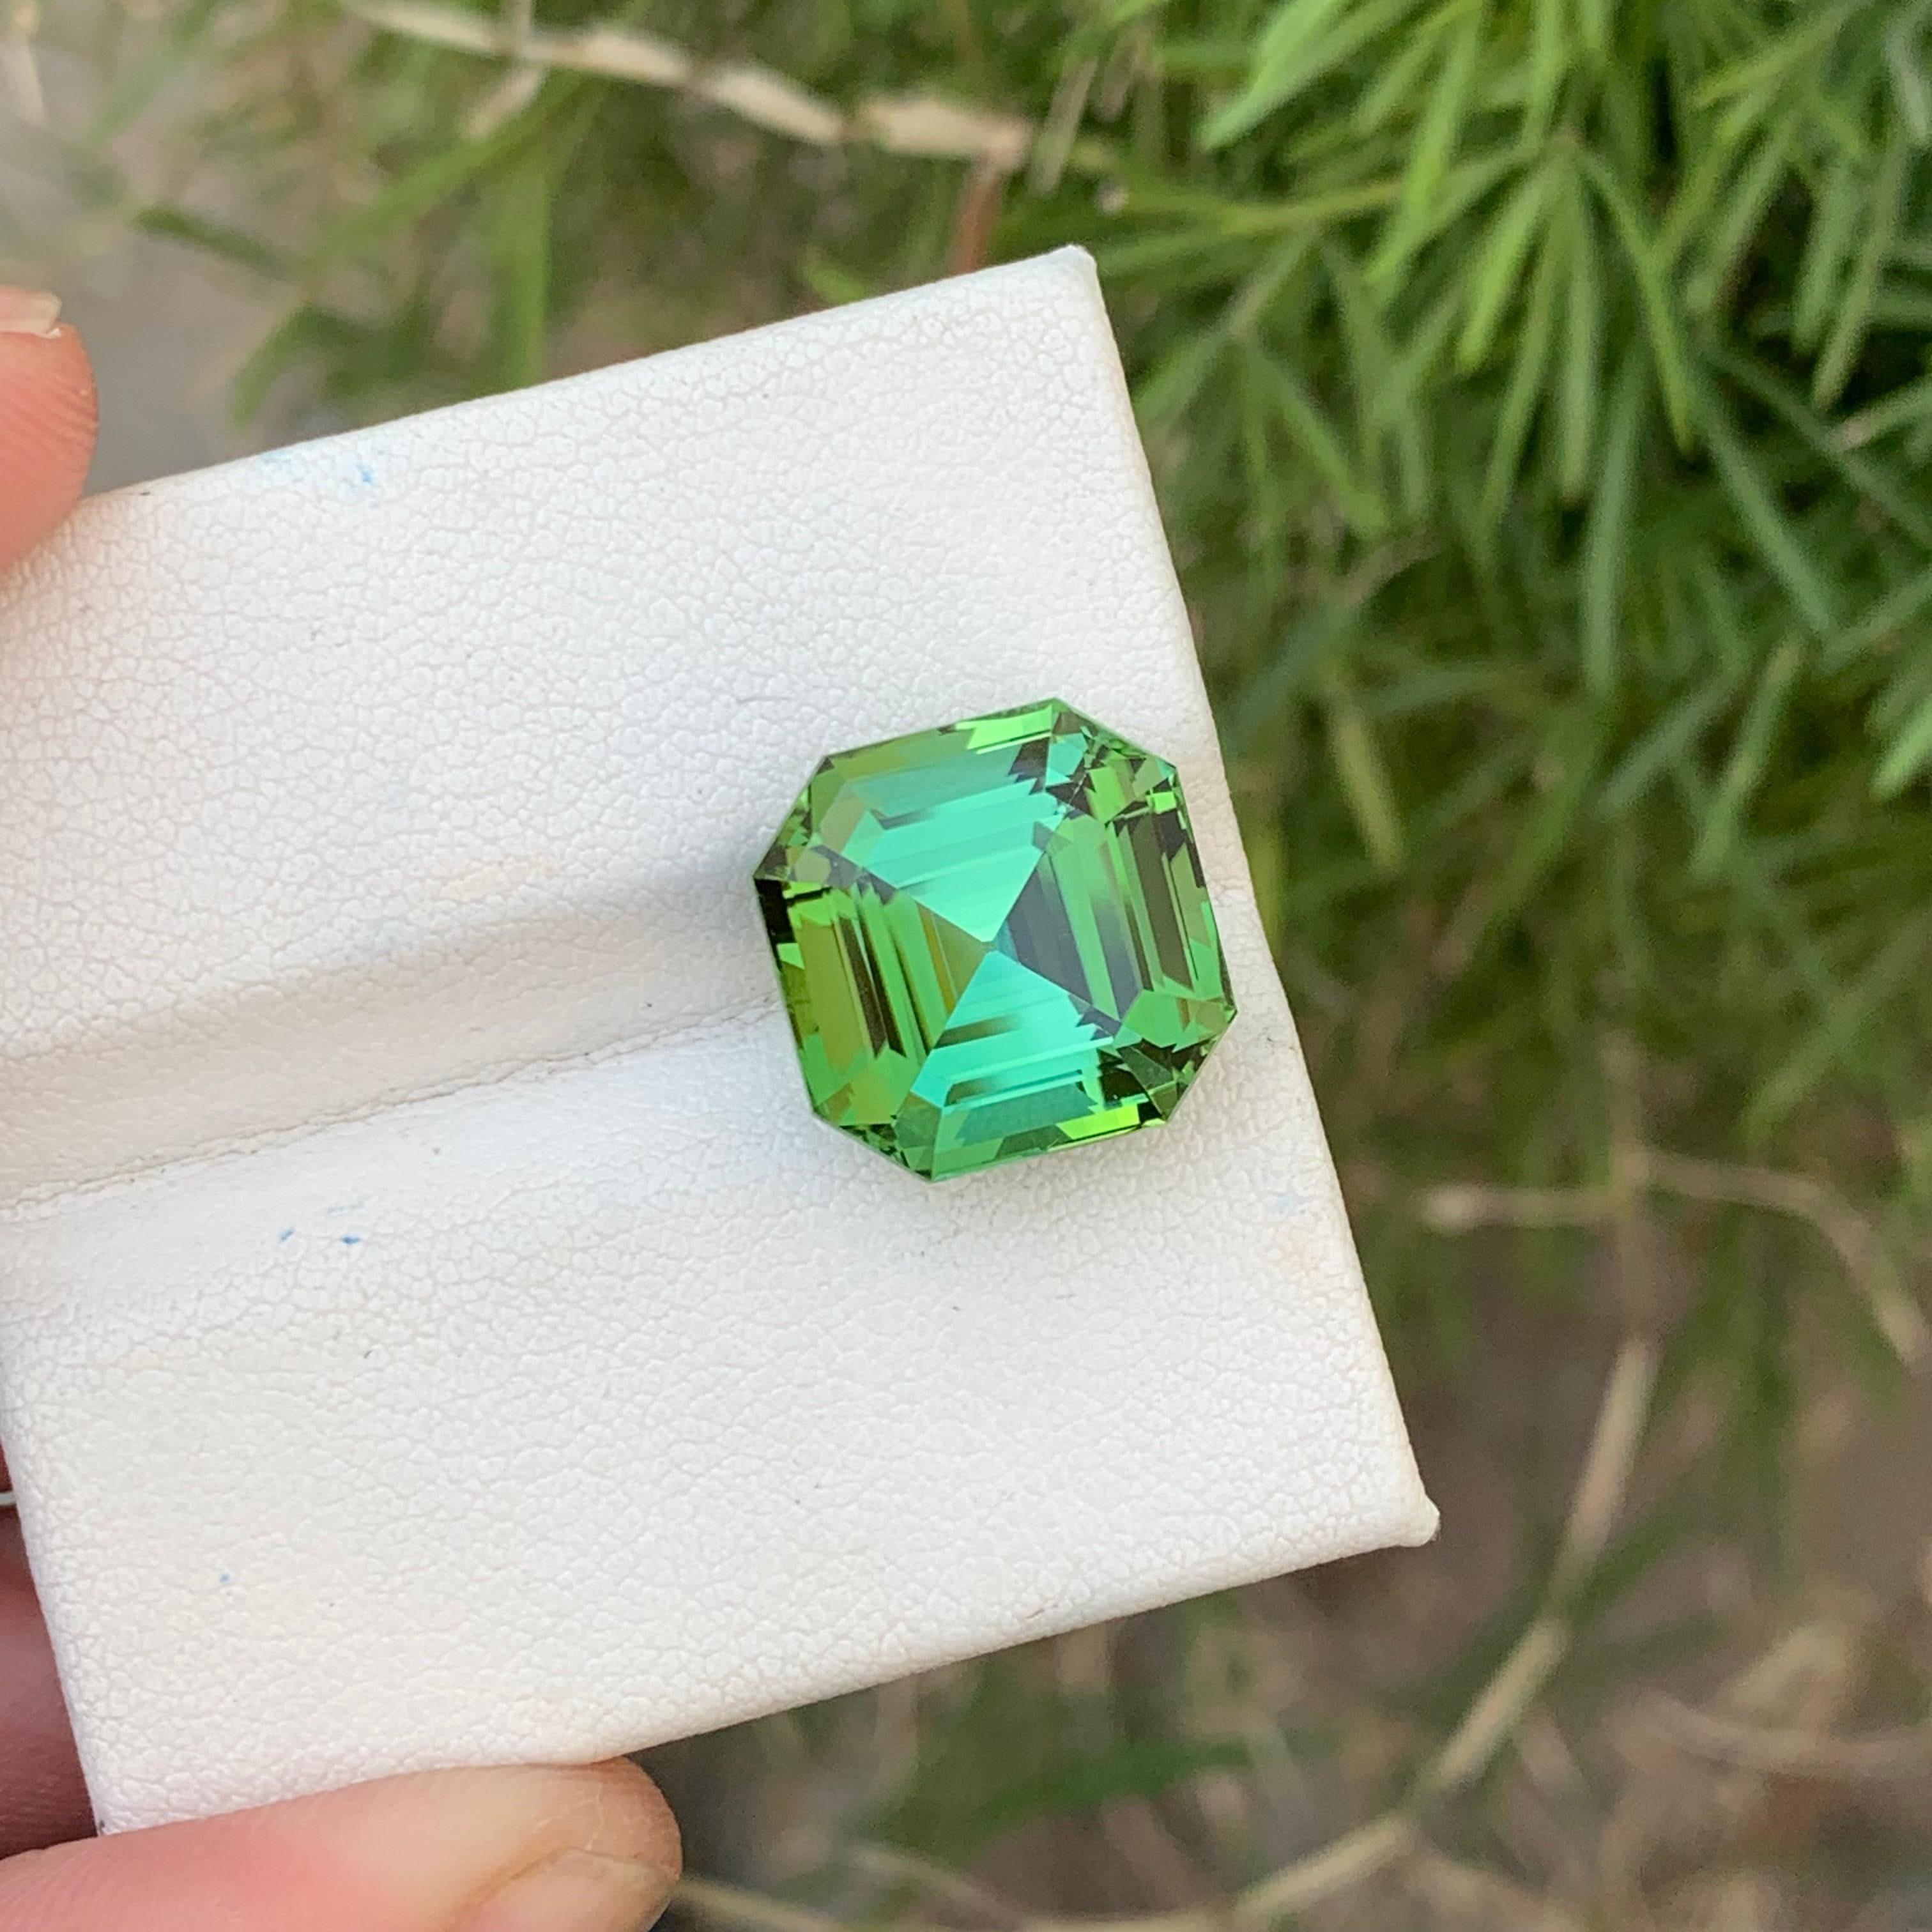 Gorgeous Mint Green Loose Tourmaline Ring Gem 12.35 Carats Asscher Cut Gemstone For Sale 1